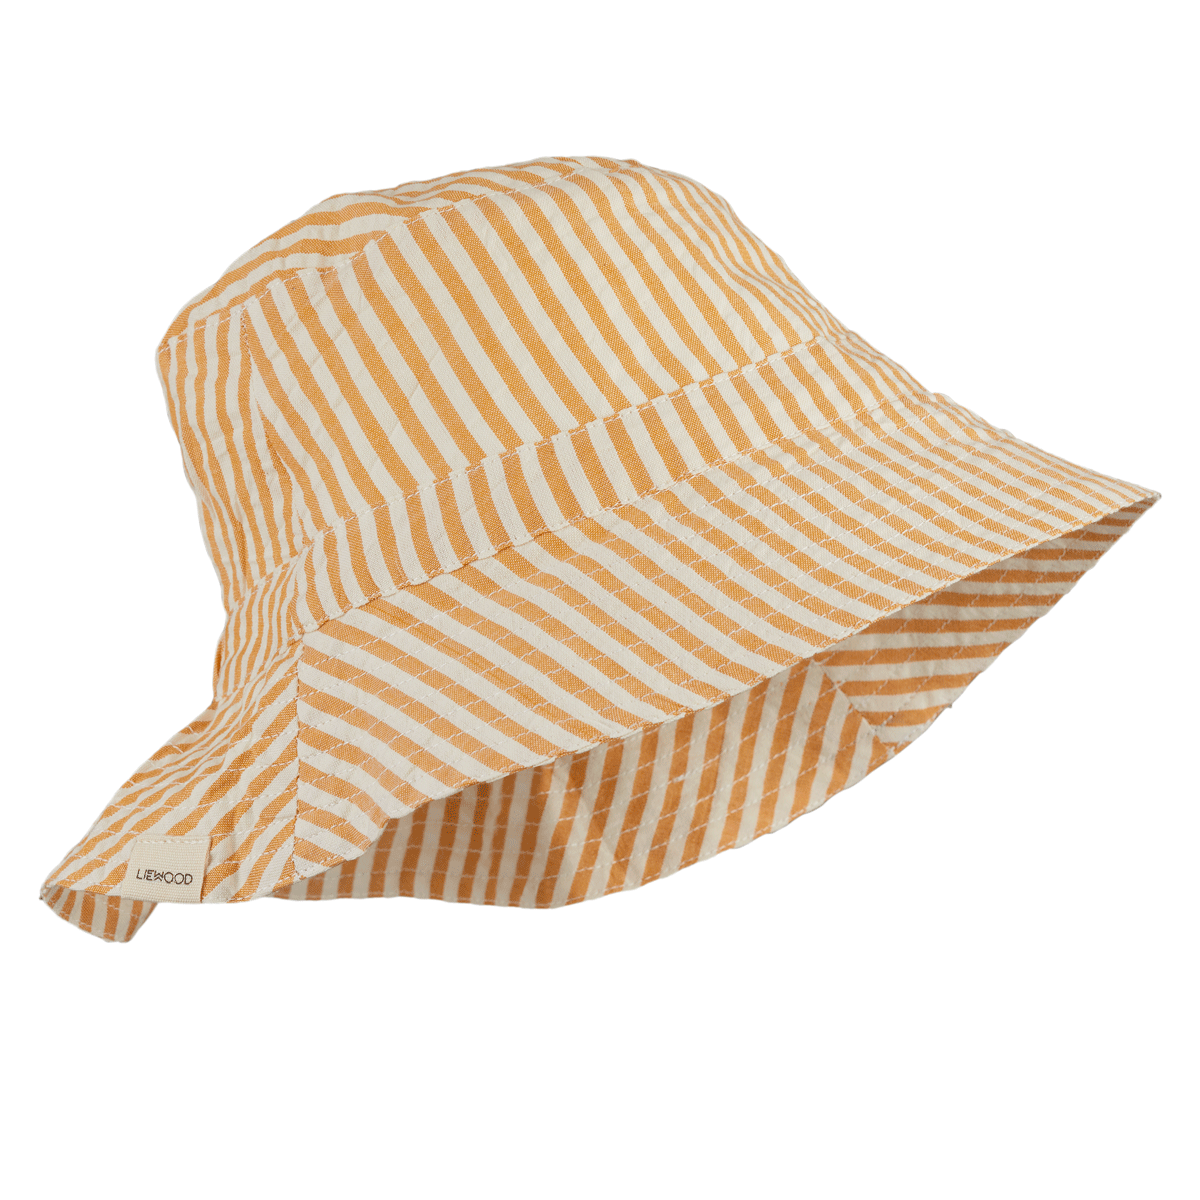 Liewood Sander bucket hat - Y/D stripe: Mustard/white